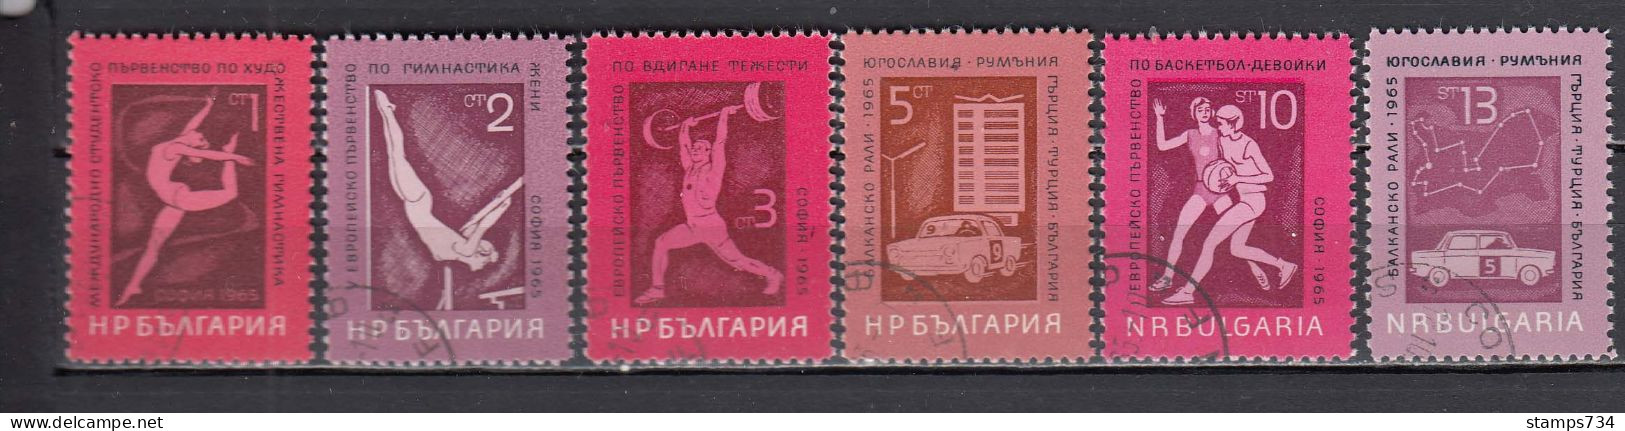 Bulgaria 1965 - Sport, Mi-Nr. 1558/63, Used - Gebraucht